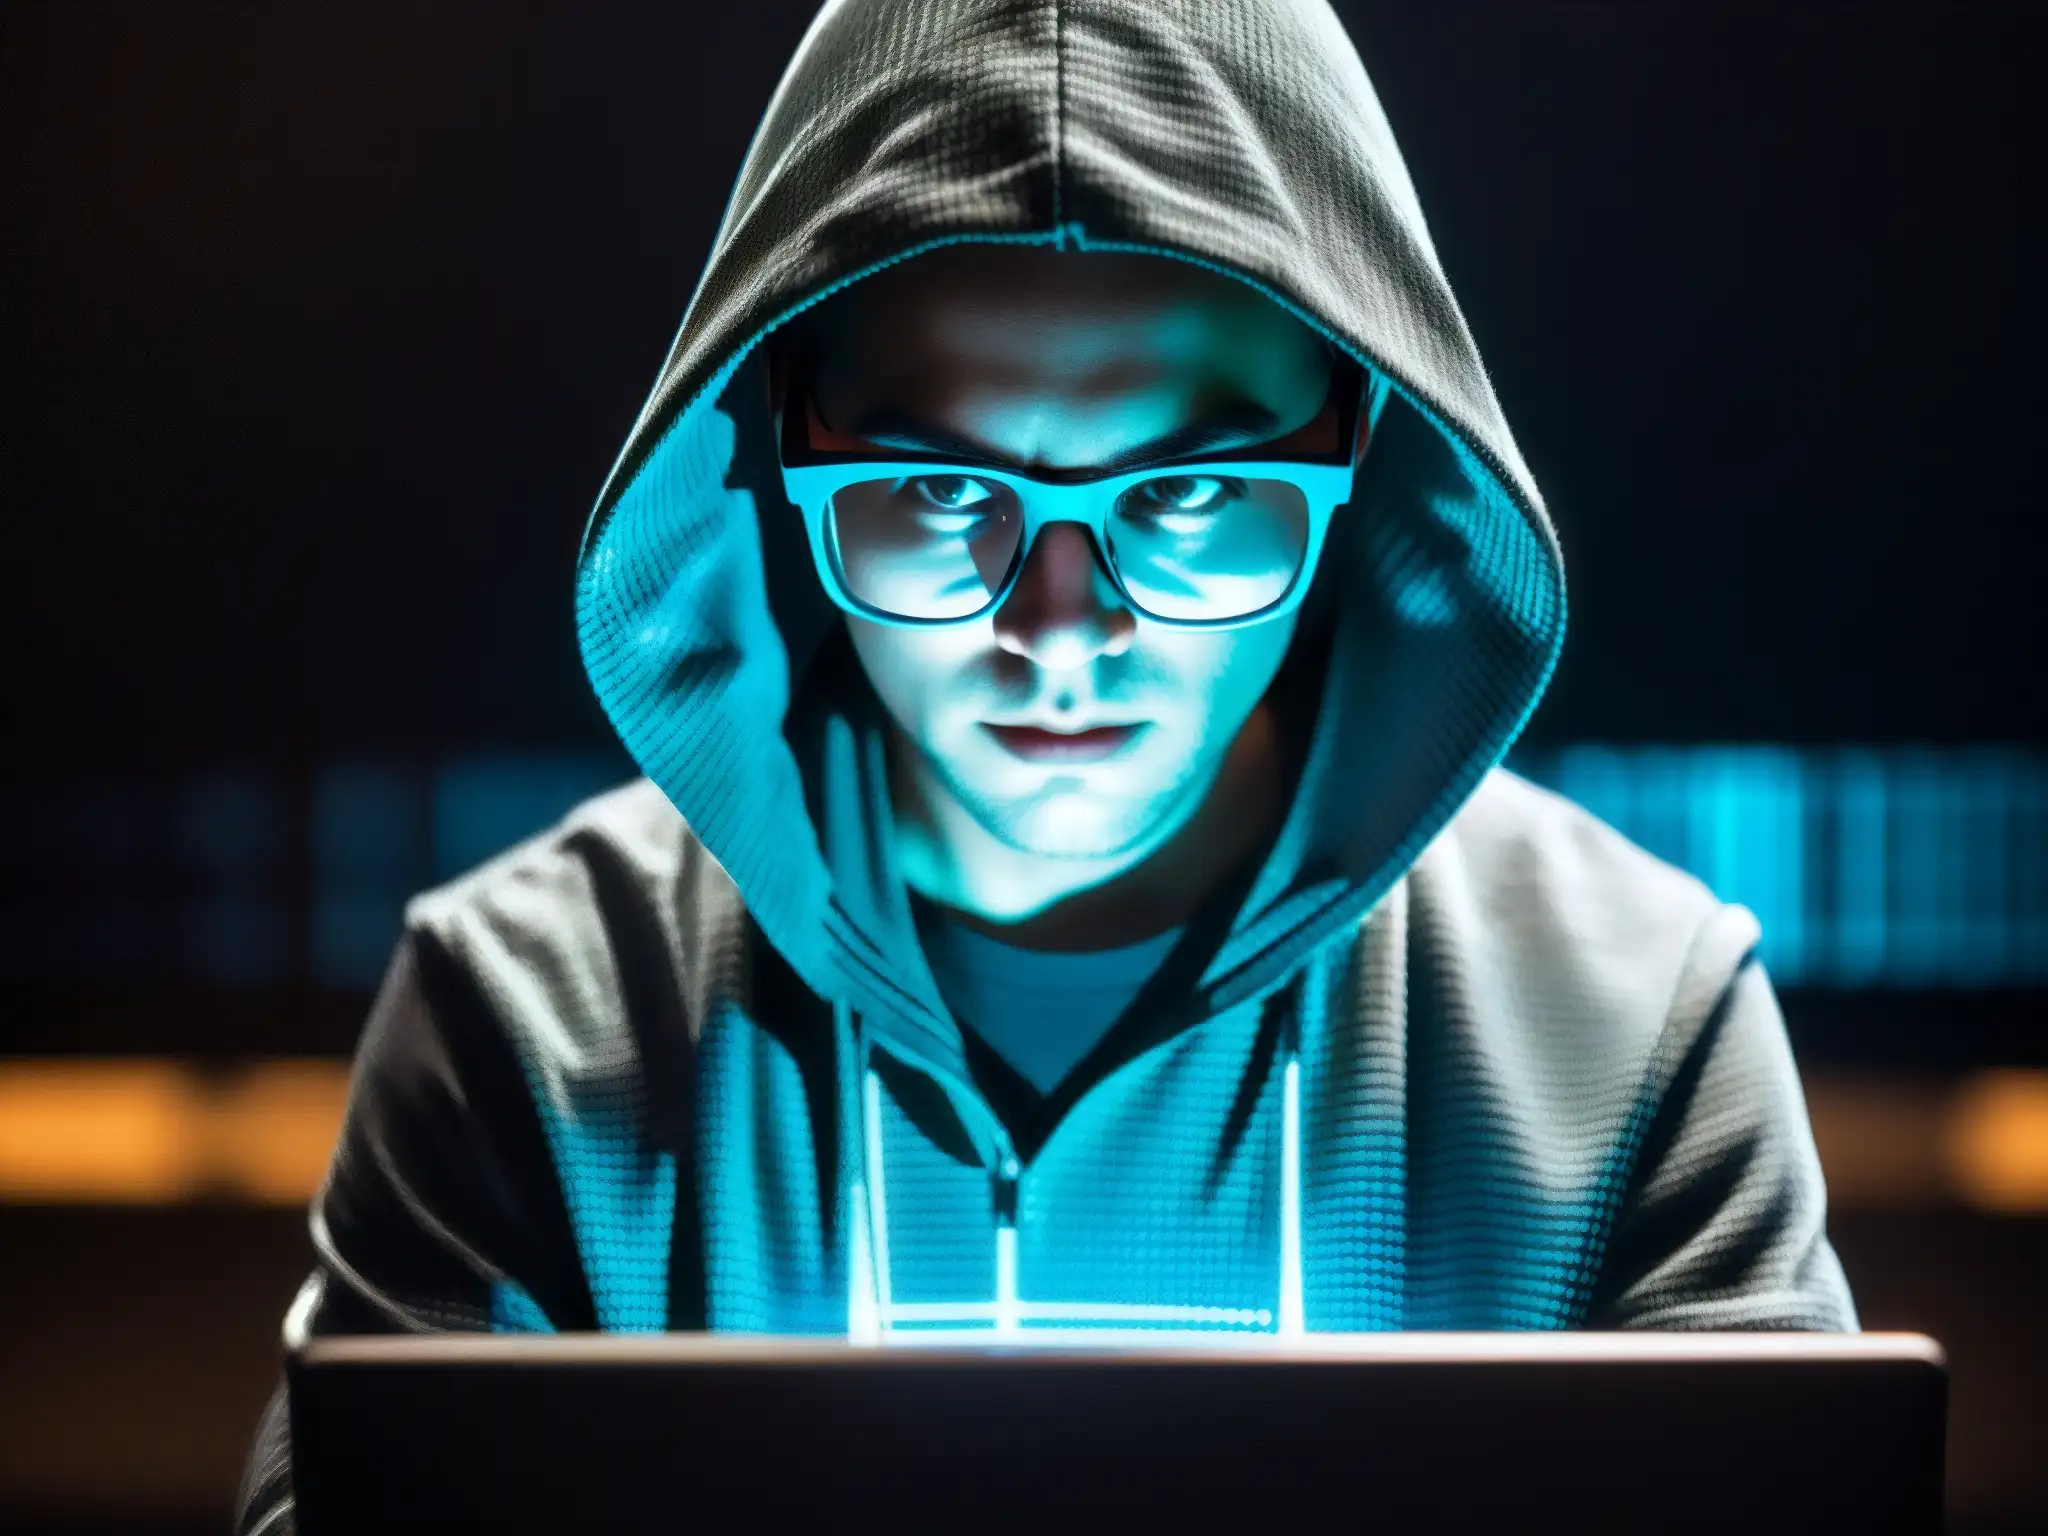 Un misterioso hacker trabaja frente a la pantalla, reflejando líneas de código en sus lentes en una habitación tenue